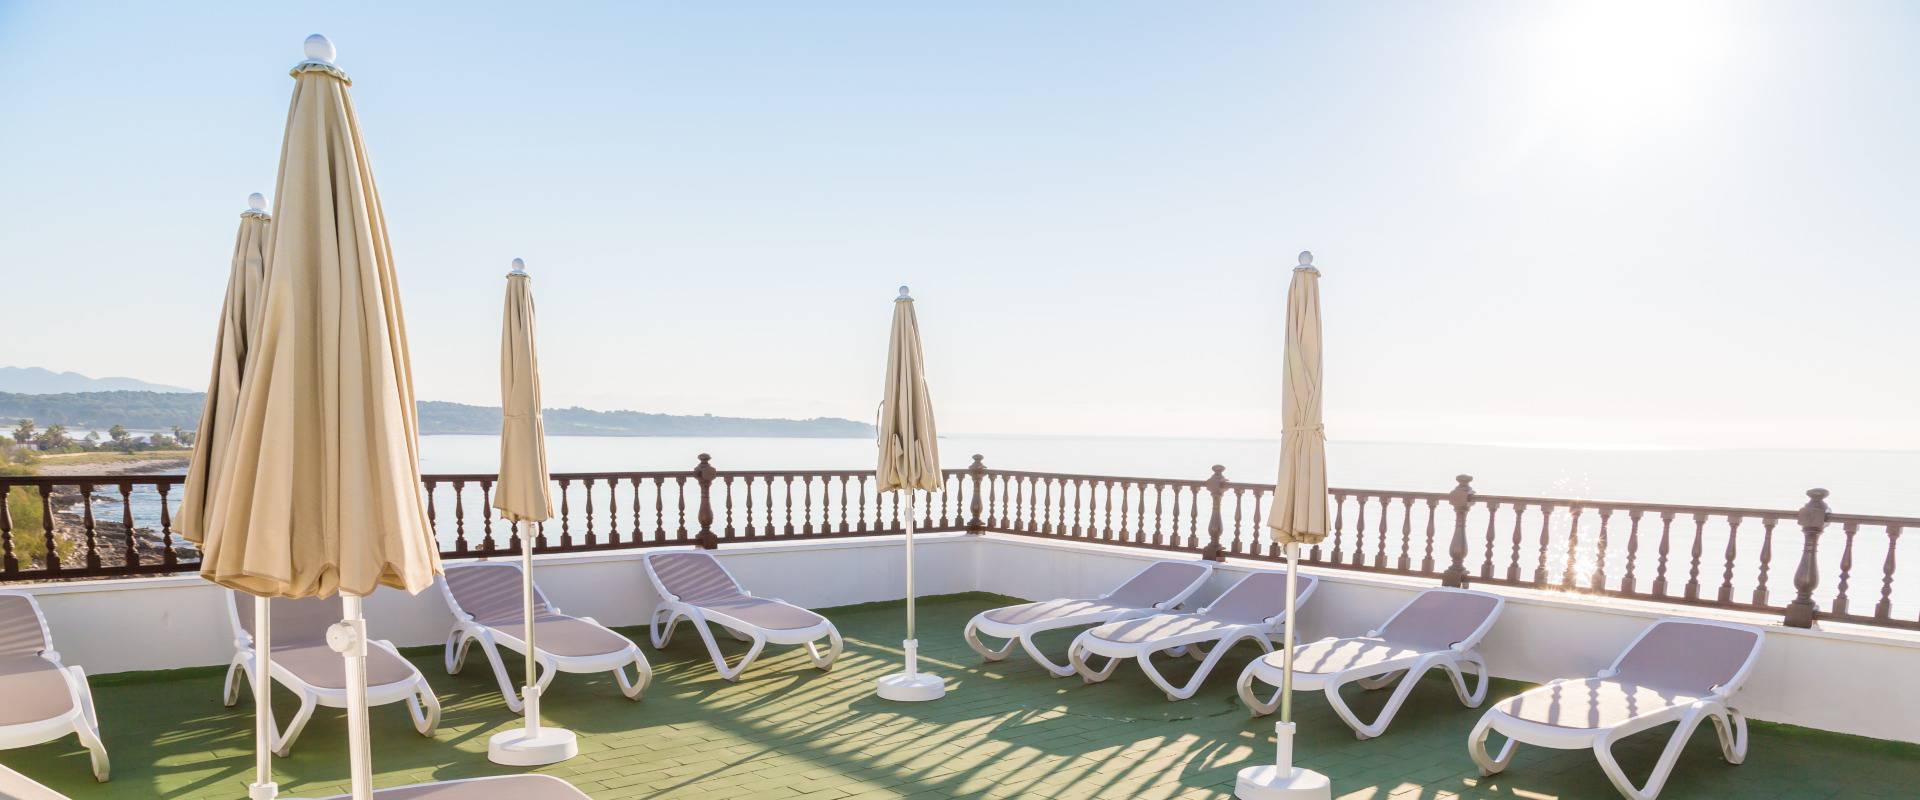  wohlbefinden   für körper und geist Hotel S'illot Mallorca